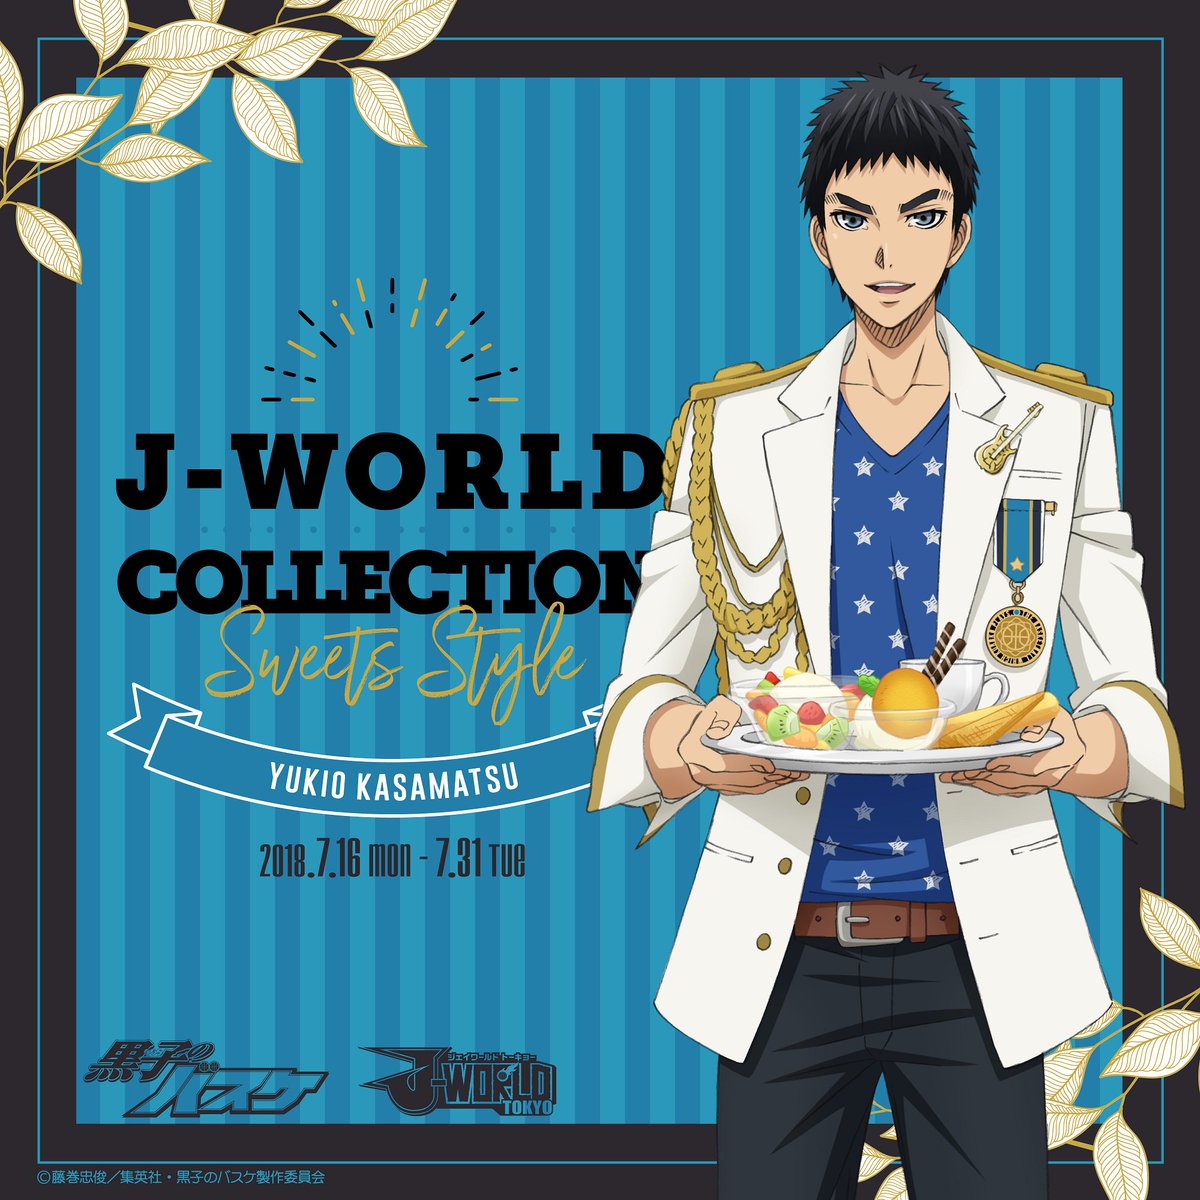 アニメ黒子のバスケ J World 黒子のバスケ J World Collection Sweets Style Ver Yukio Kasamatsu が開催決定 描き下ろしイラストのグッズや景品 キャラクターが持っているフードメニューがイベント期間中楽しめます 開催期間 第3弾 18年